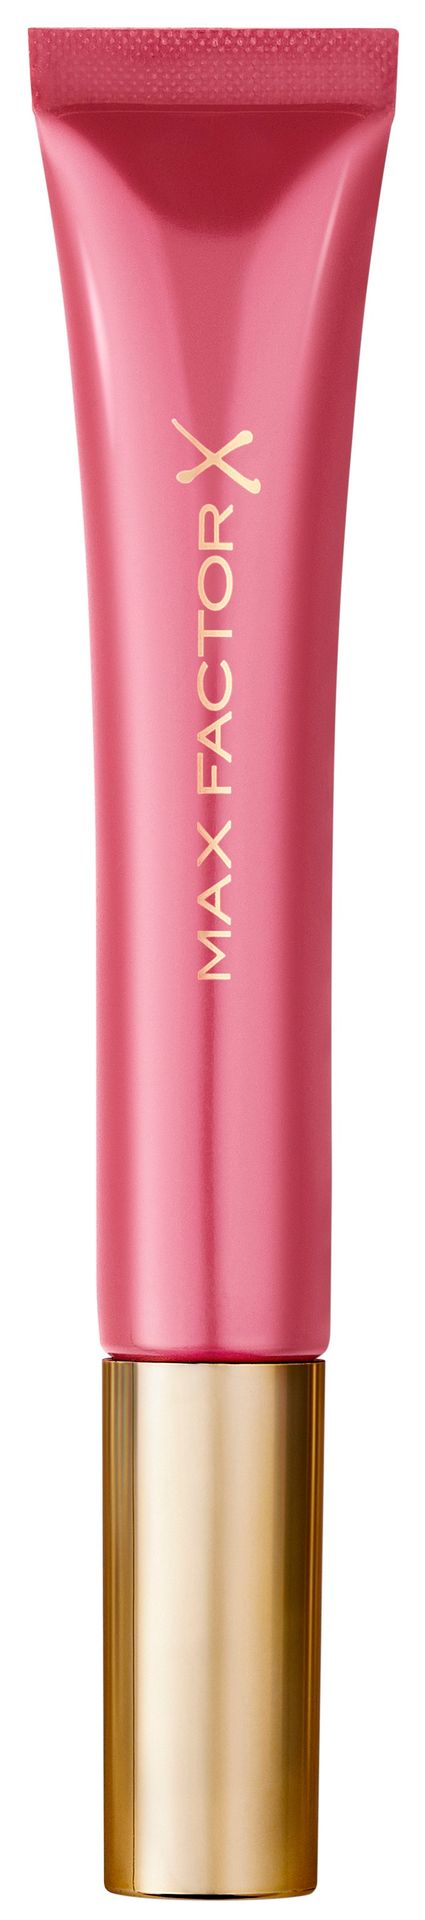 Max Factor Colour Elixir Cushion 81646108